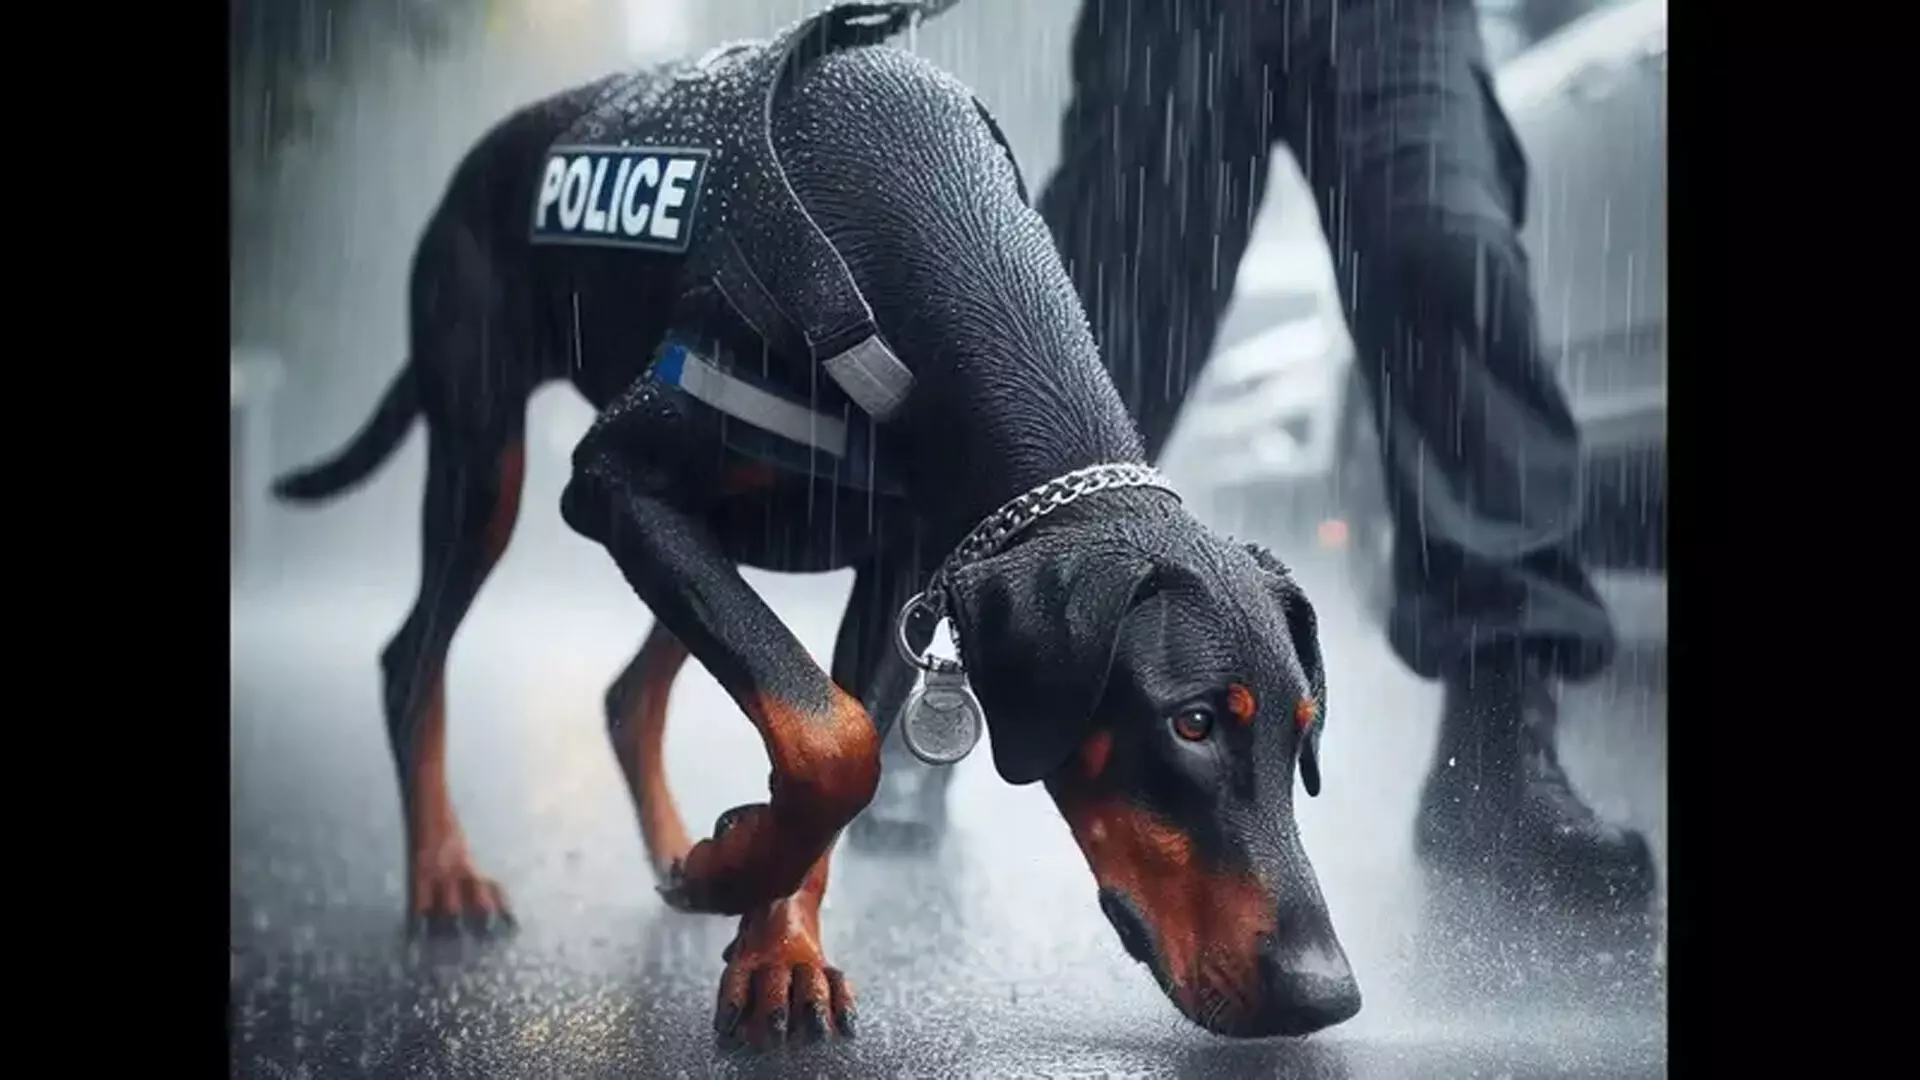 Super sleuth: पुलिस का कुत्ता हत्यारे की तलाश में बारिश में 8 किमी दौड़ा, महिला को बचाया